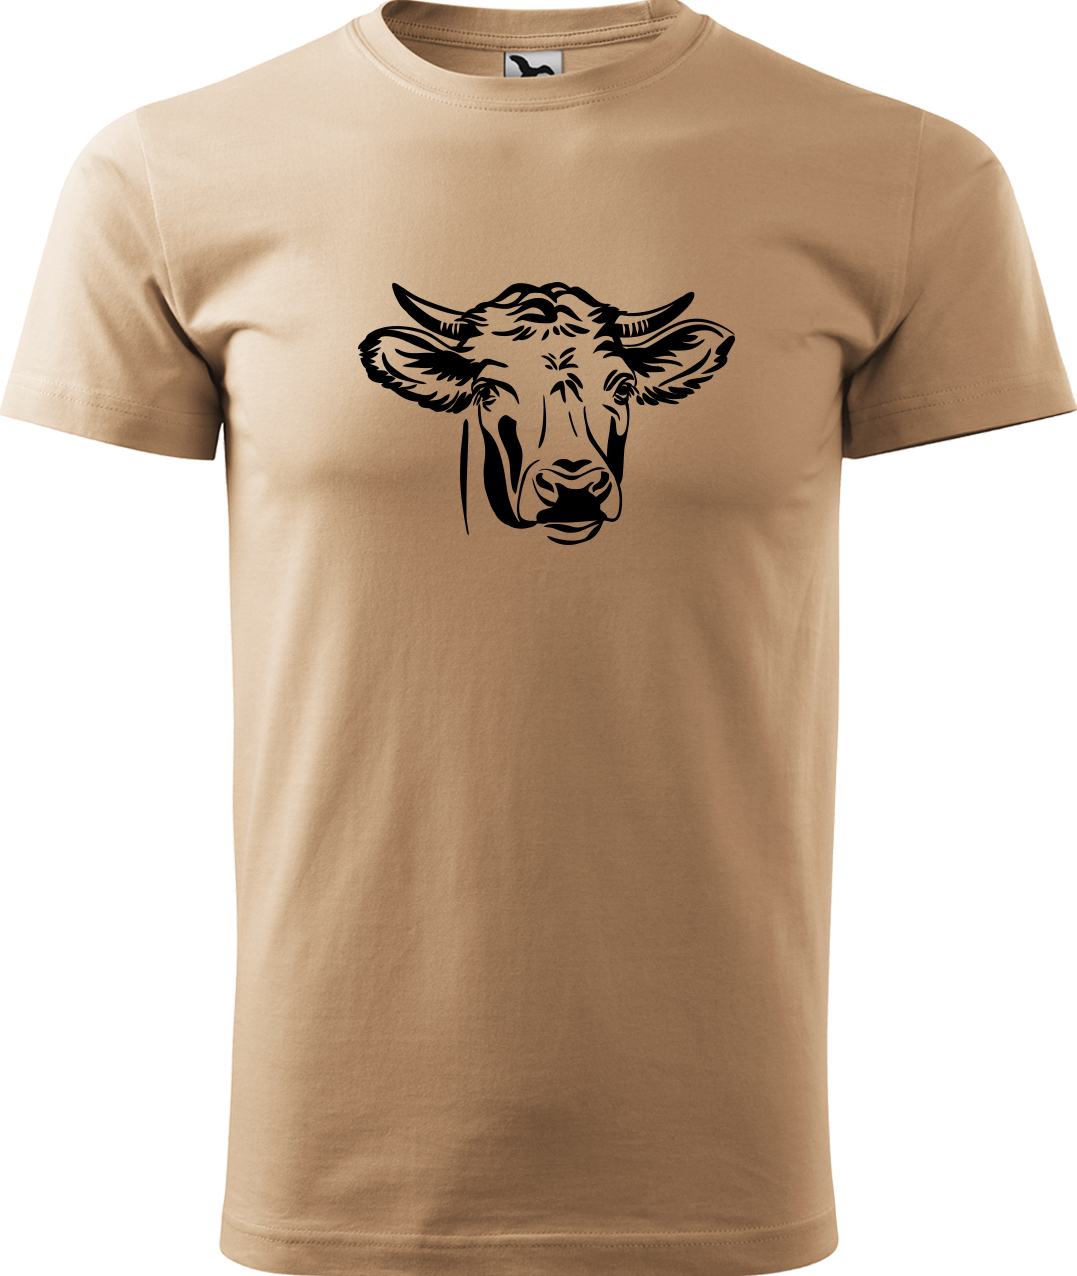 Pánské tričko s krávou - Hlava krávy Velikost: XL, Barva: Písková (08), Střih: pánský